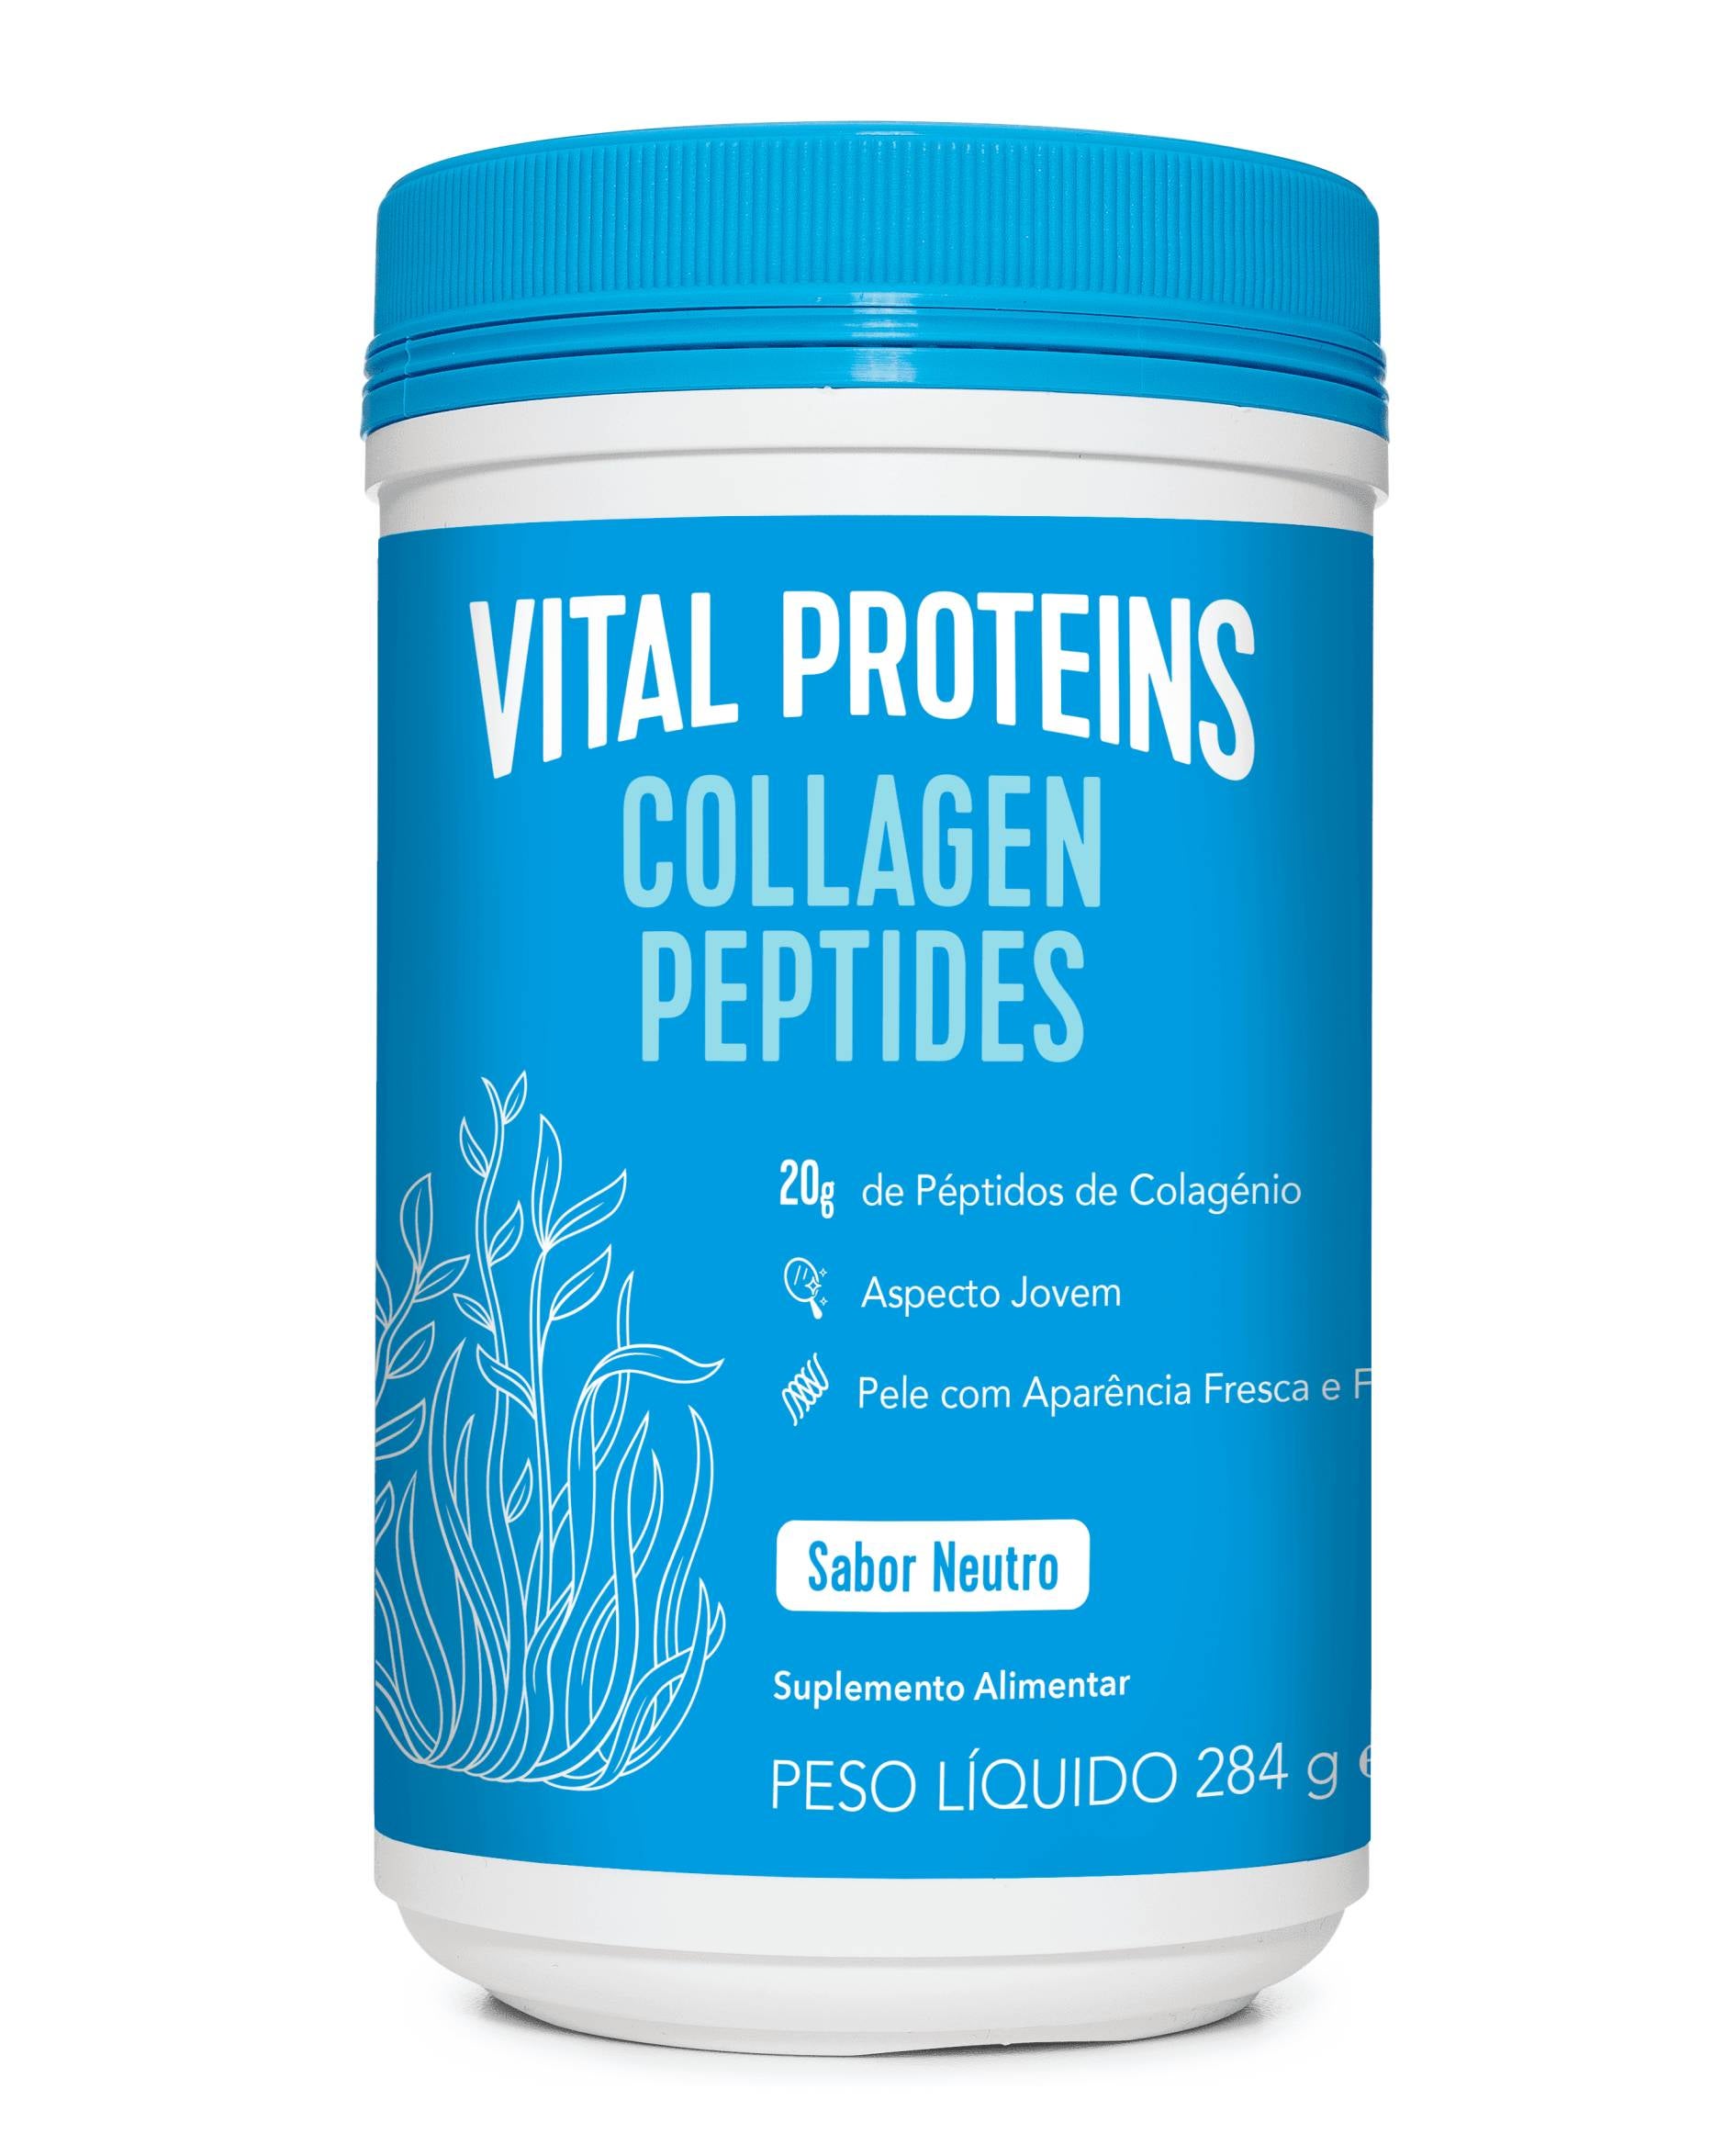 Vital Proteins péptidos colagénio